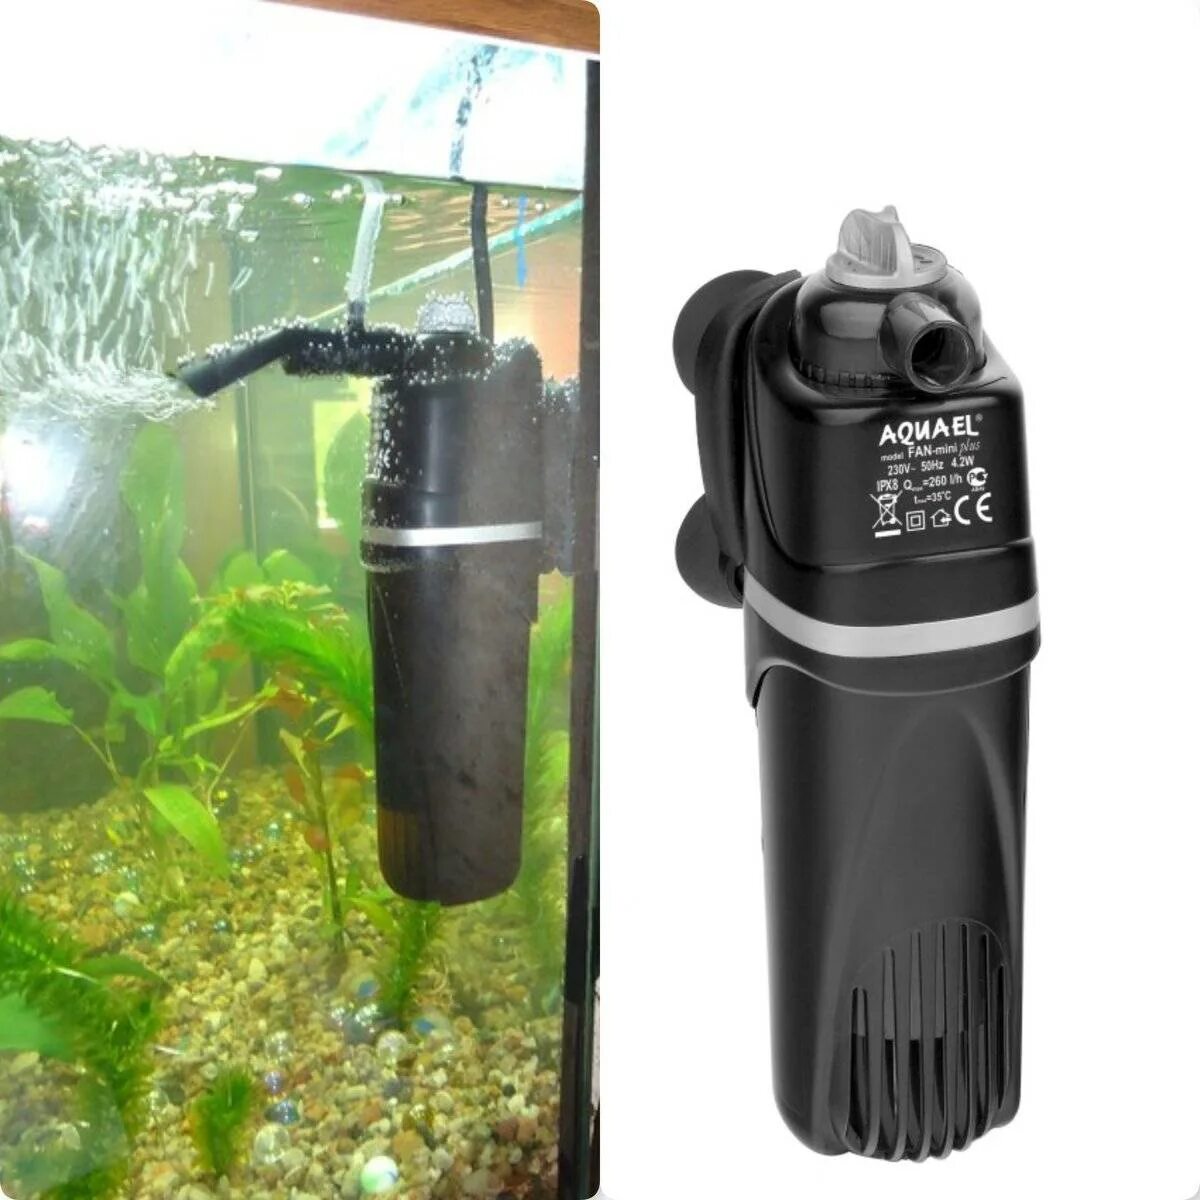 Внешний фильтр Aquael для аквариума на 200 литров. Компрессор аквариумный акваэль. Фильтр аквариумный внешний dophh 700. Aquael Fan Mini Plus.